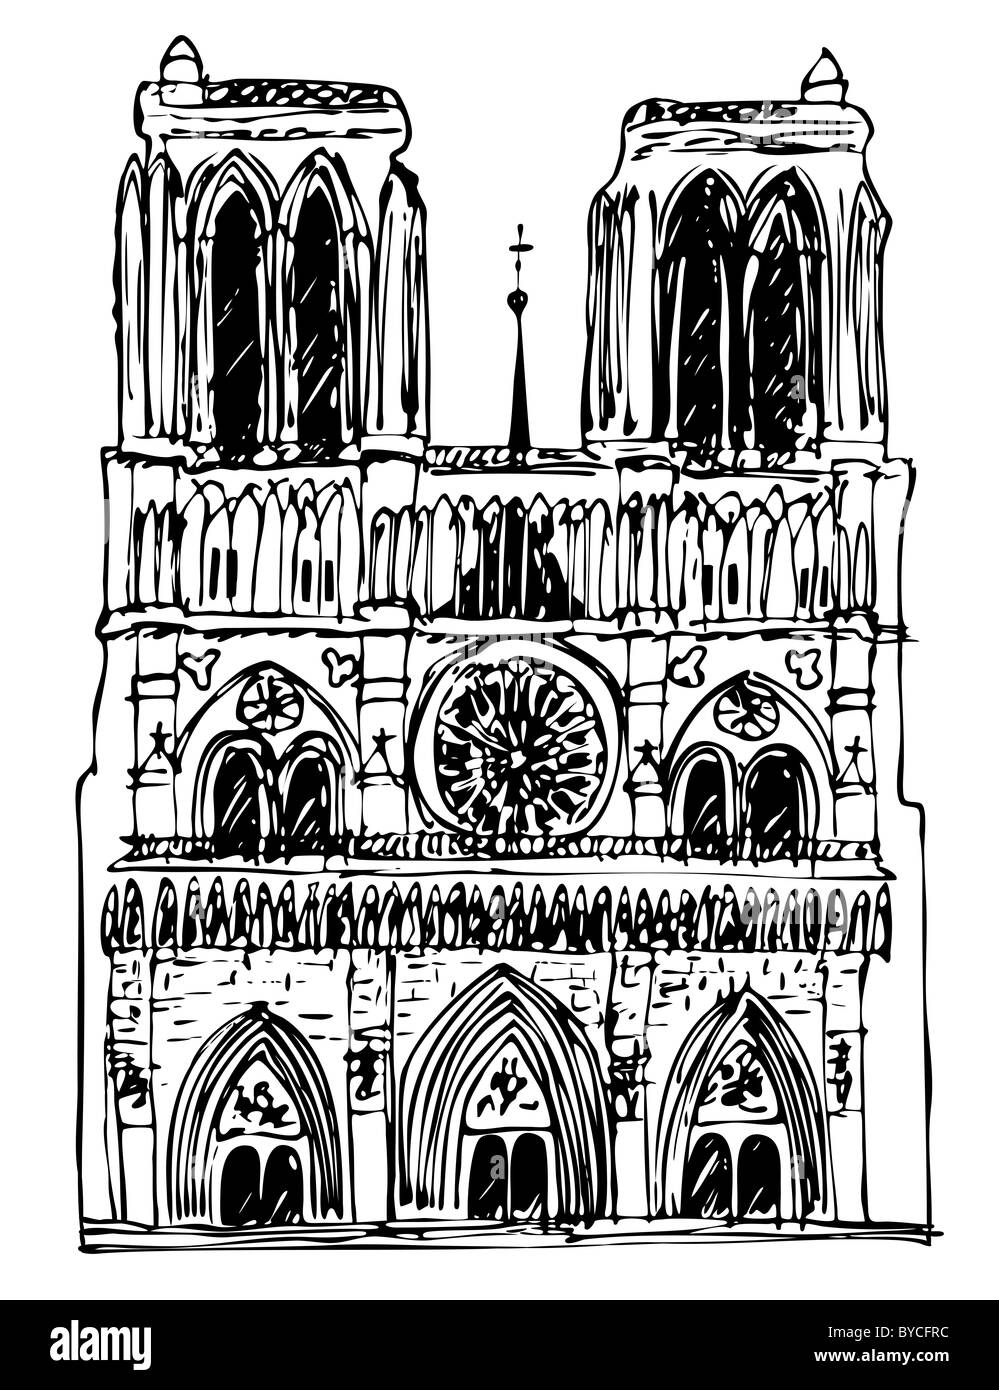 Basilique Notre-Dame - illustration Banque D'Images